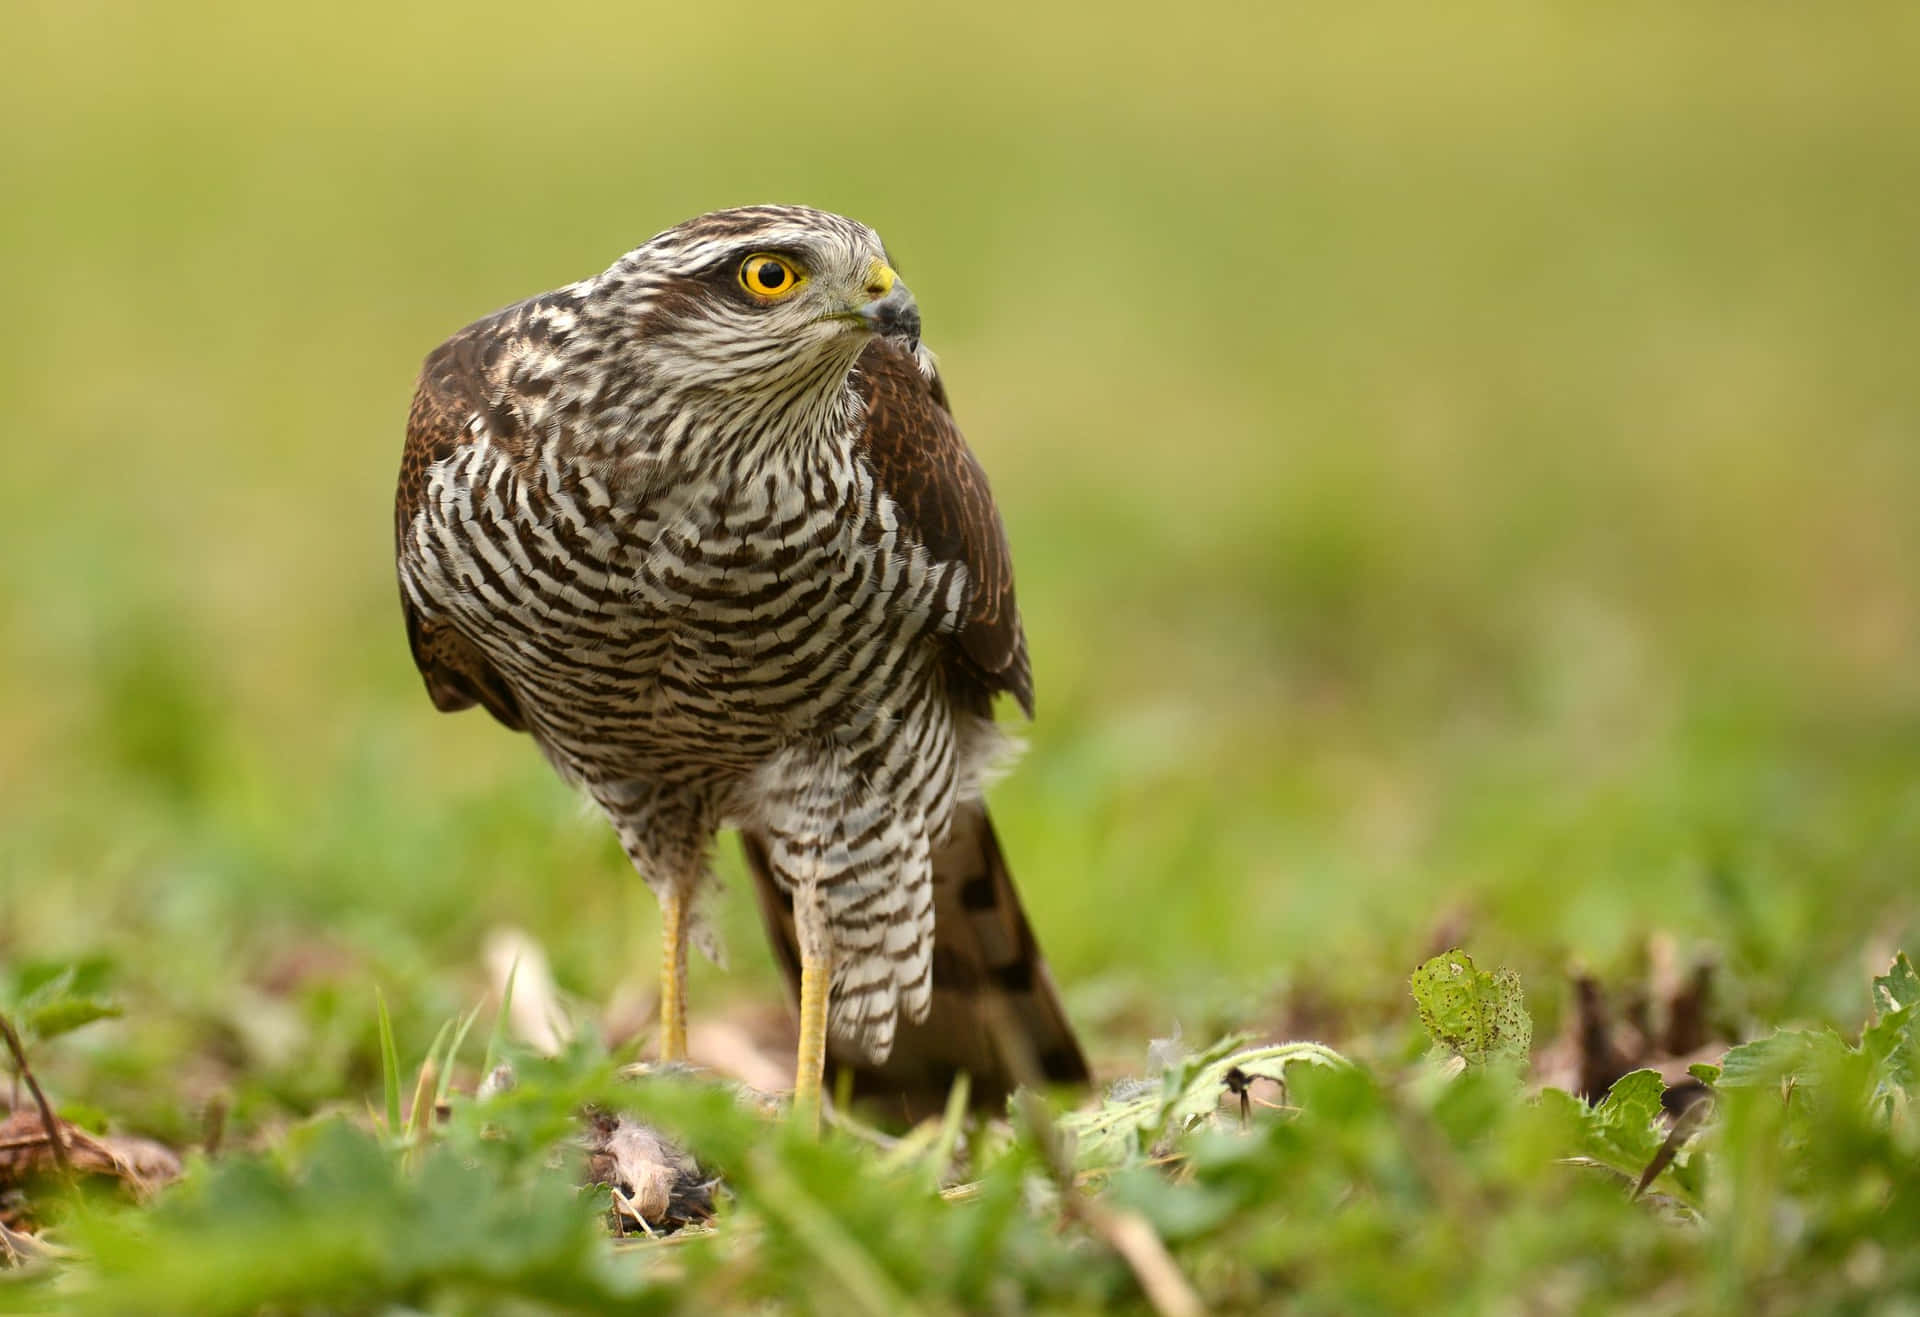 A Sharp-Eyed Sparrow Hawk on the Hunt